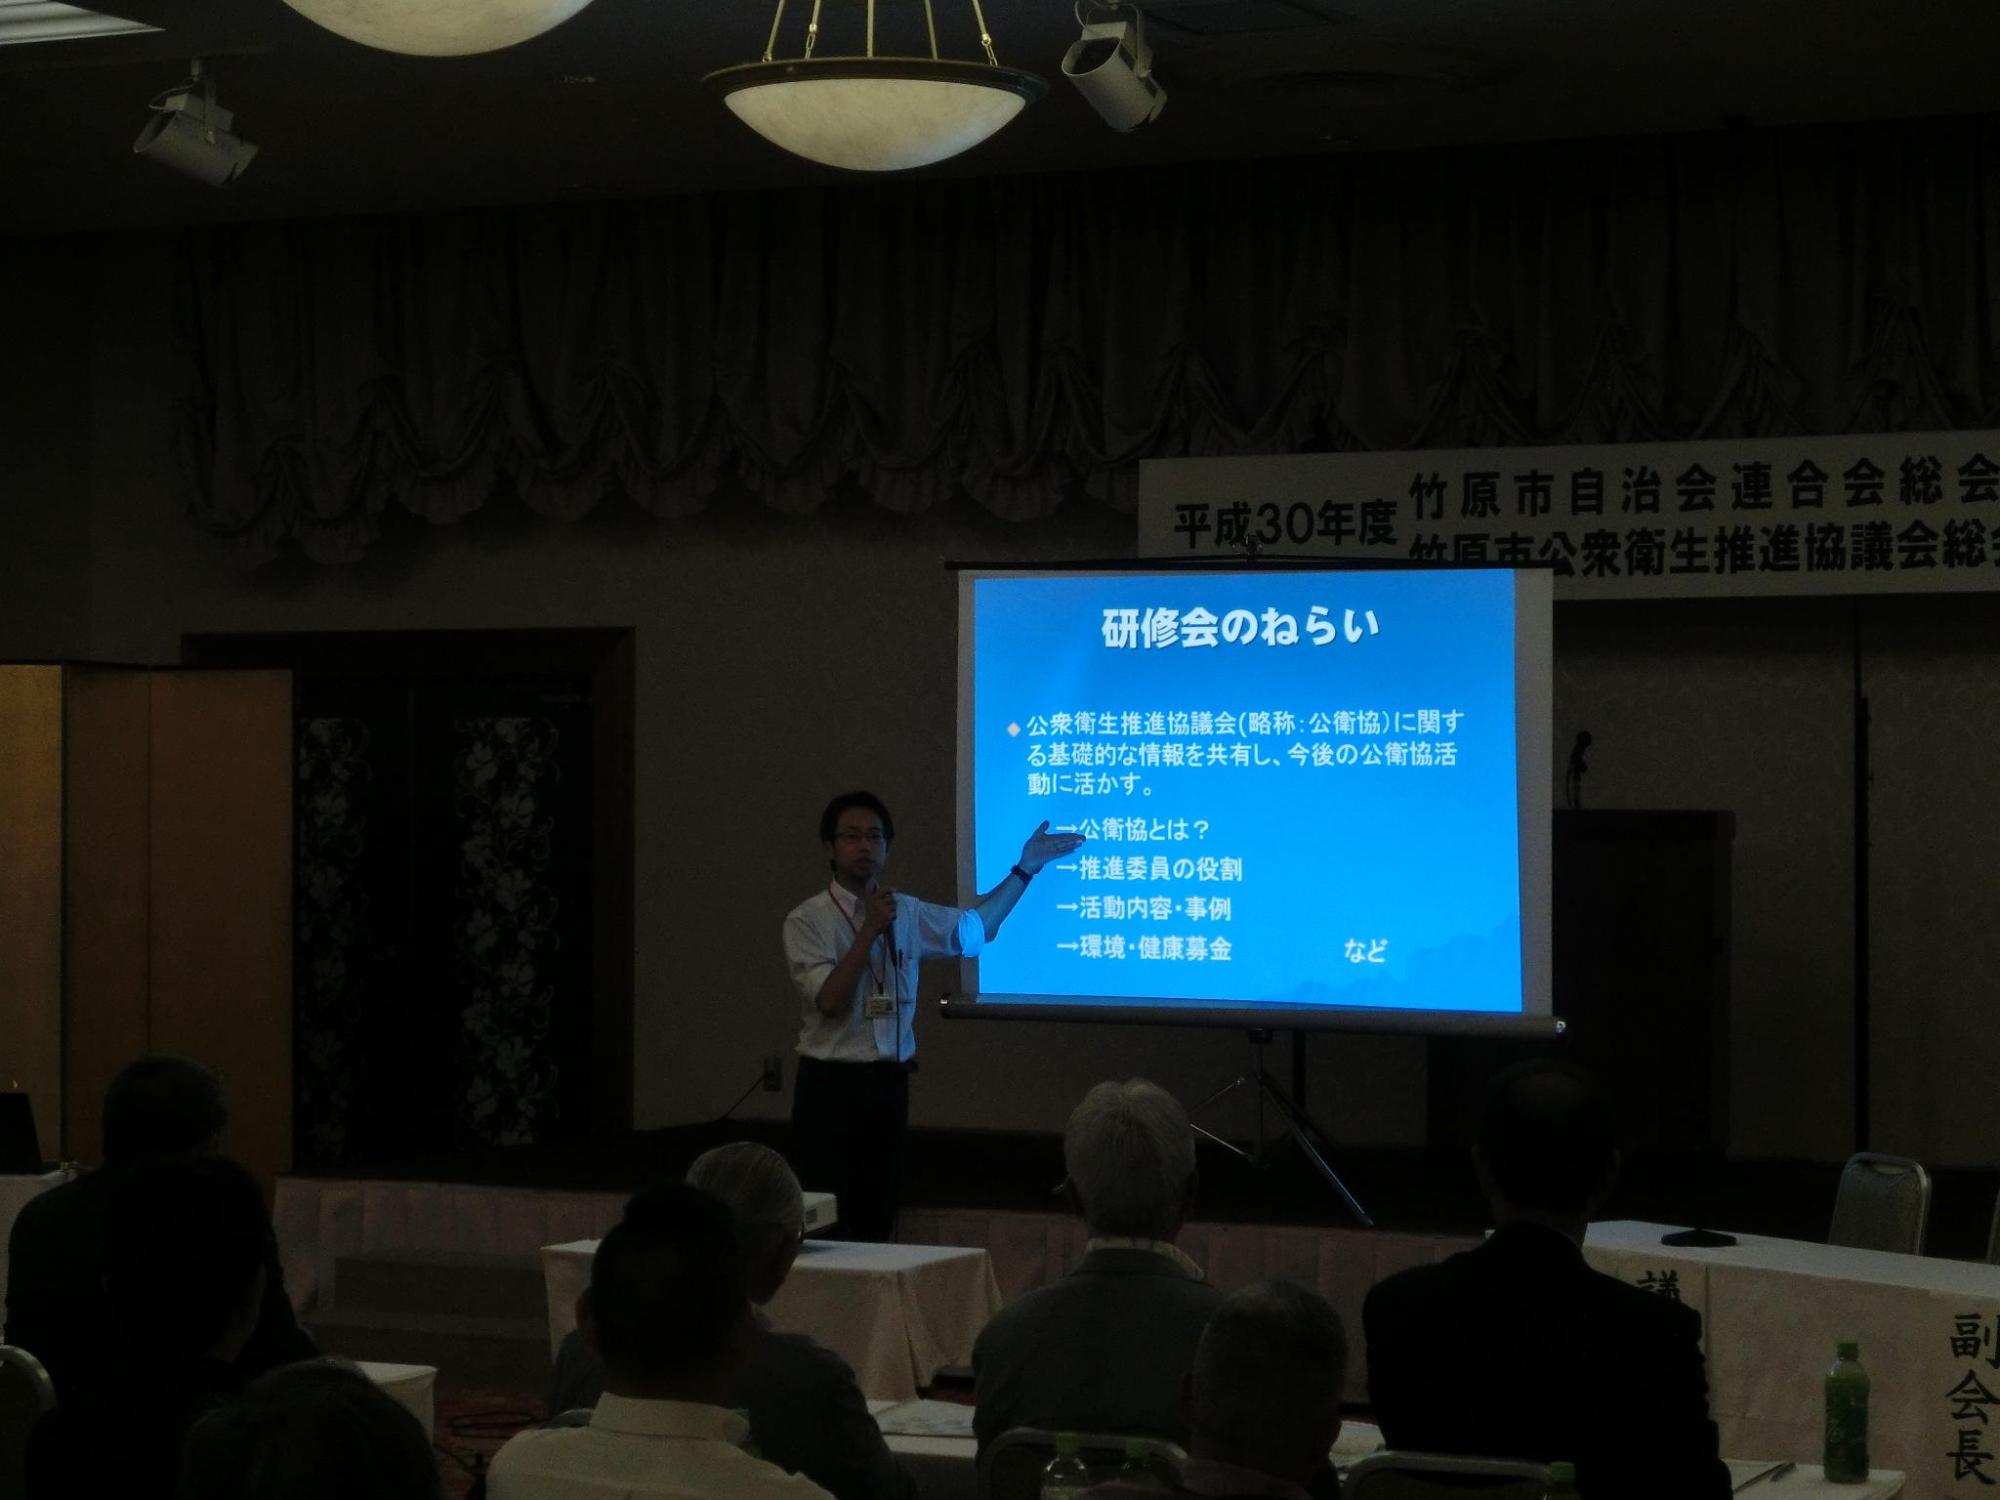 県の環境保健協会の先生が学習会でプロジェクターを使って説明をしている写真